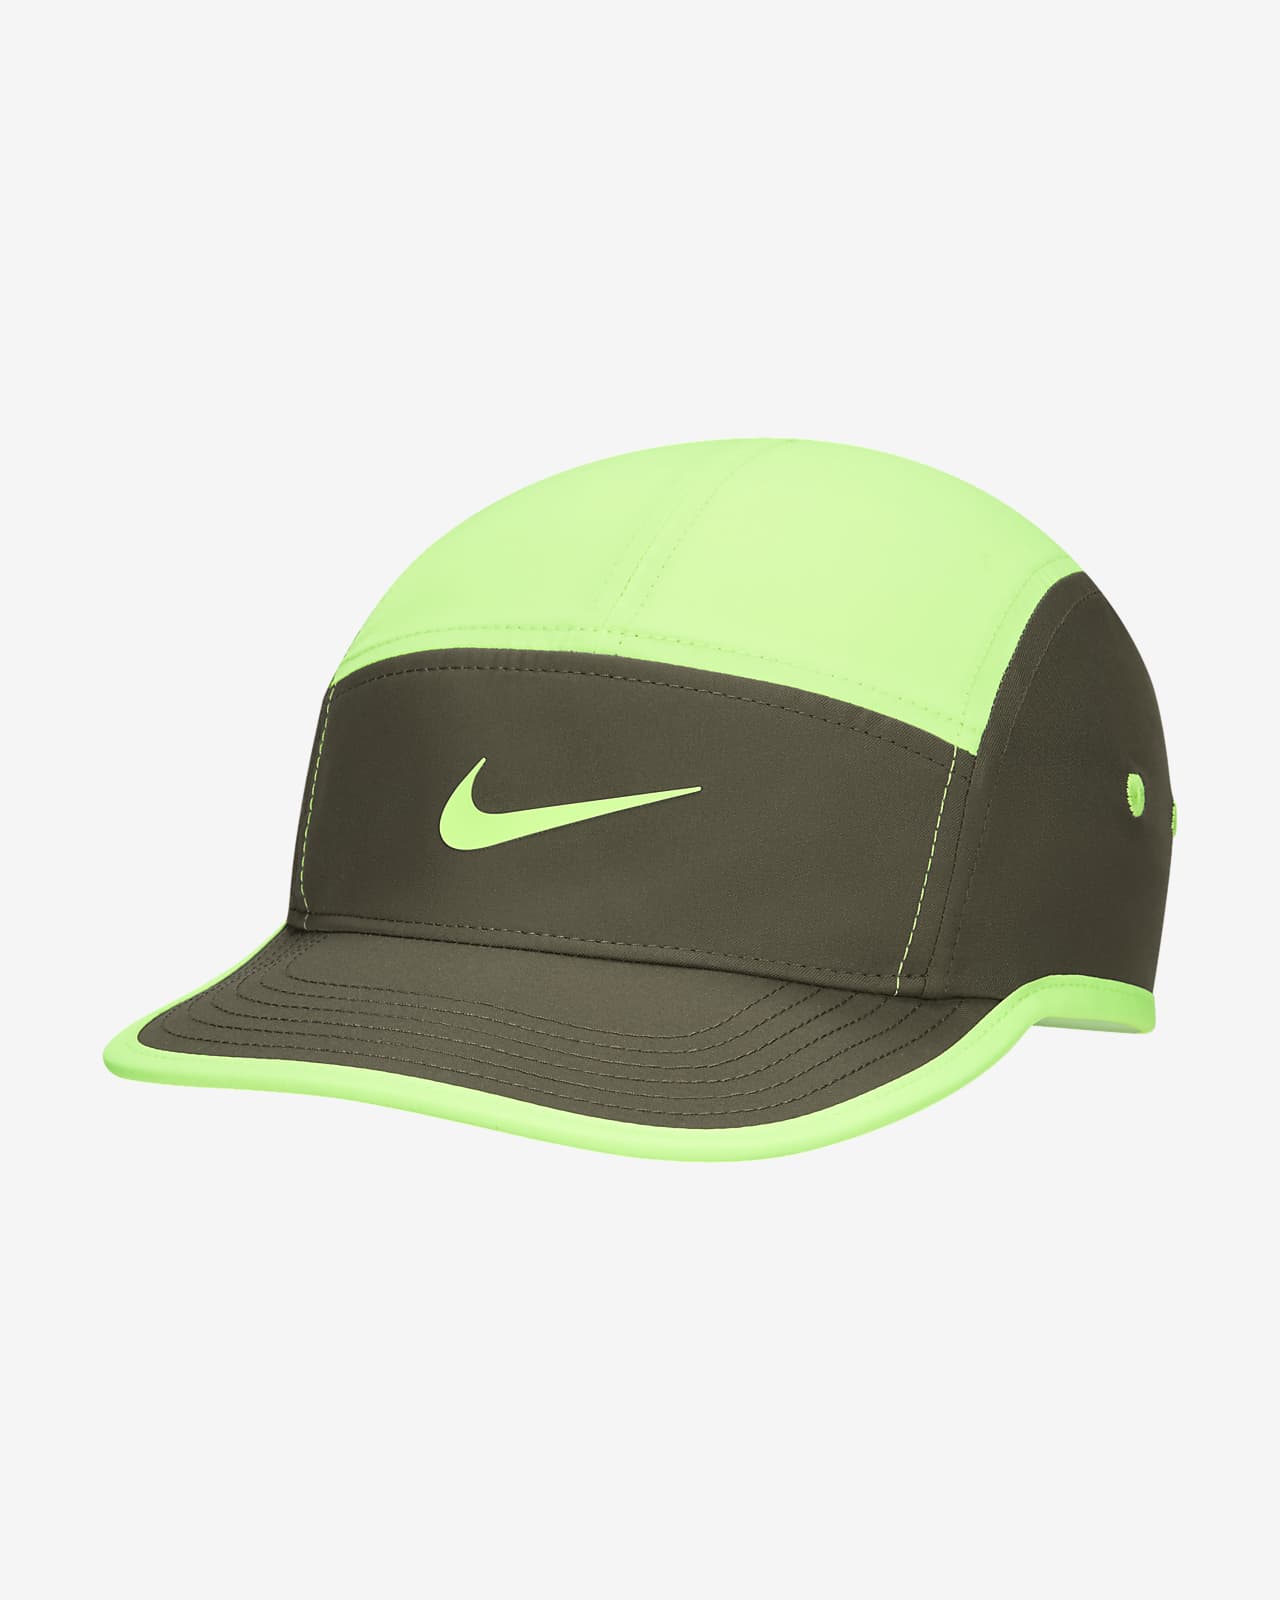 Nike Dri-FIT Fly ustrukturert Swoosh-caps